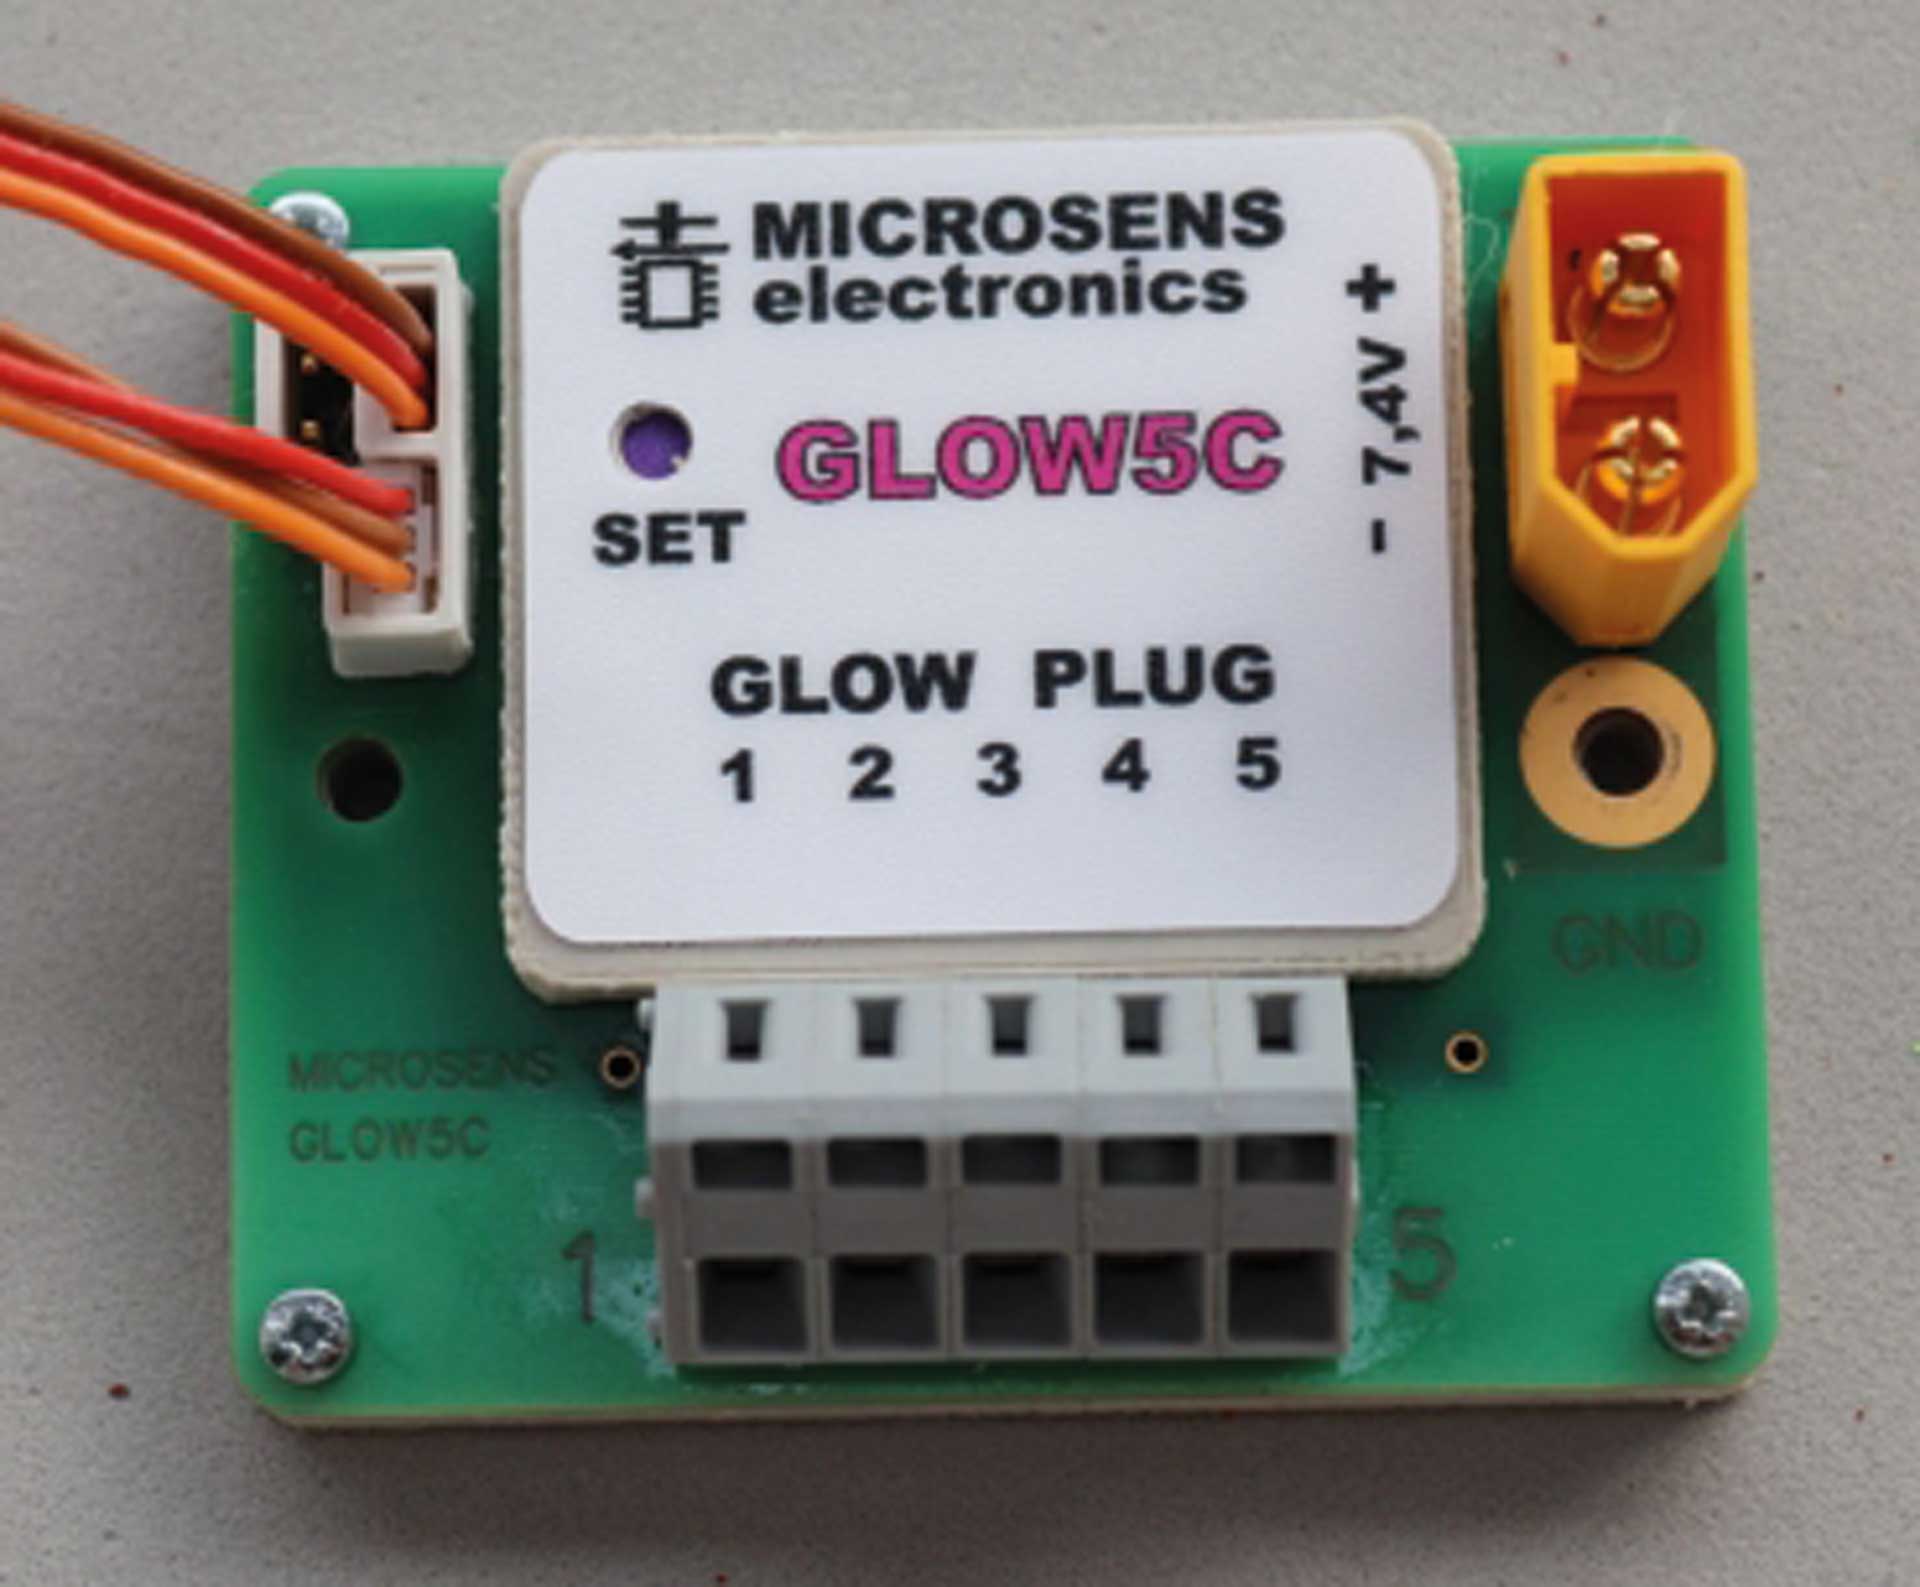 MICROSENS GLOW 5C GLOW PLUGS HEATING